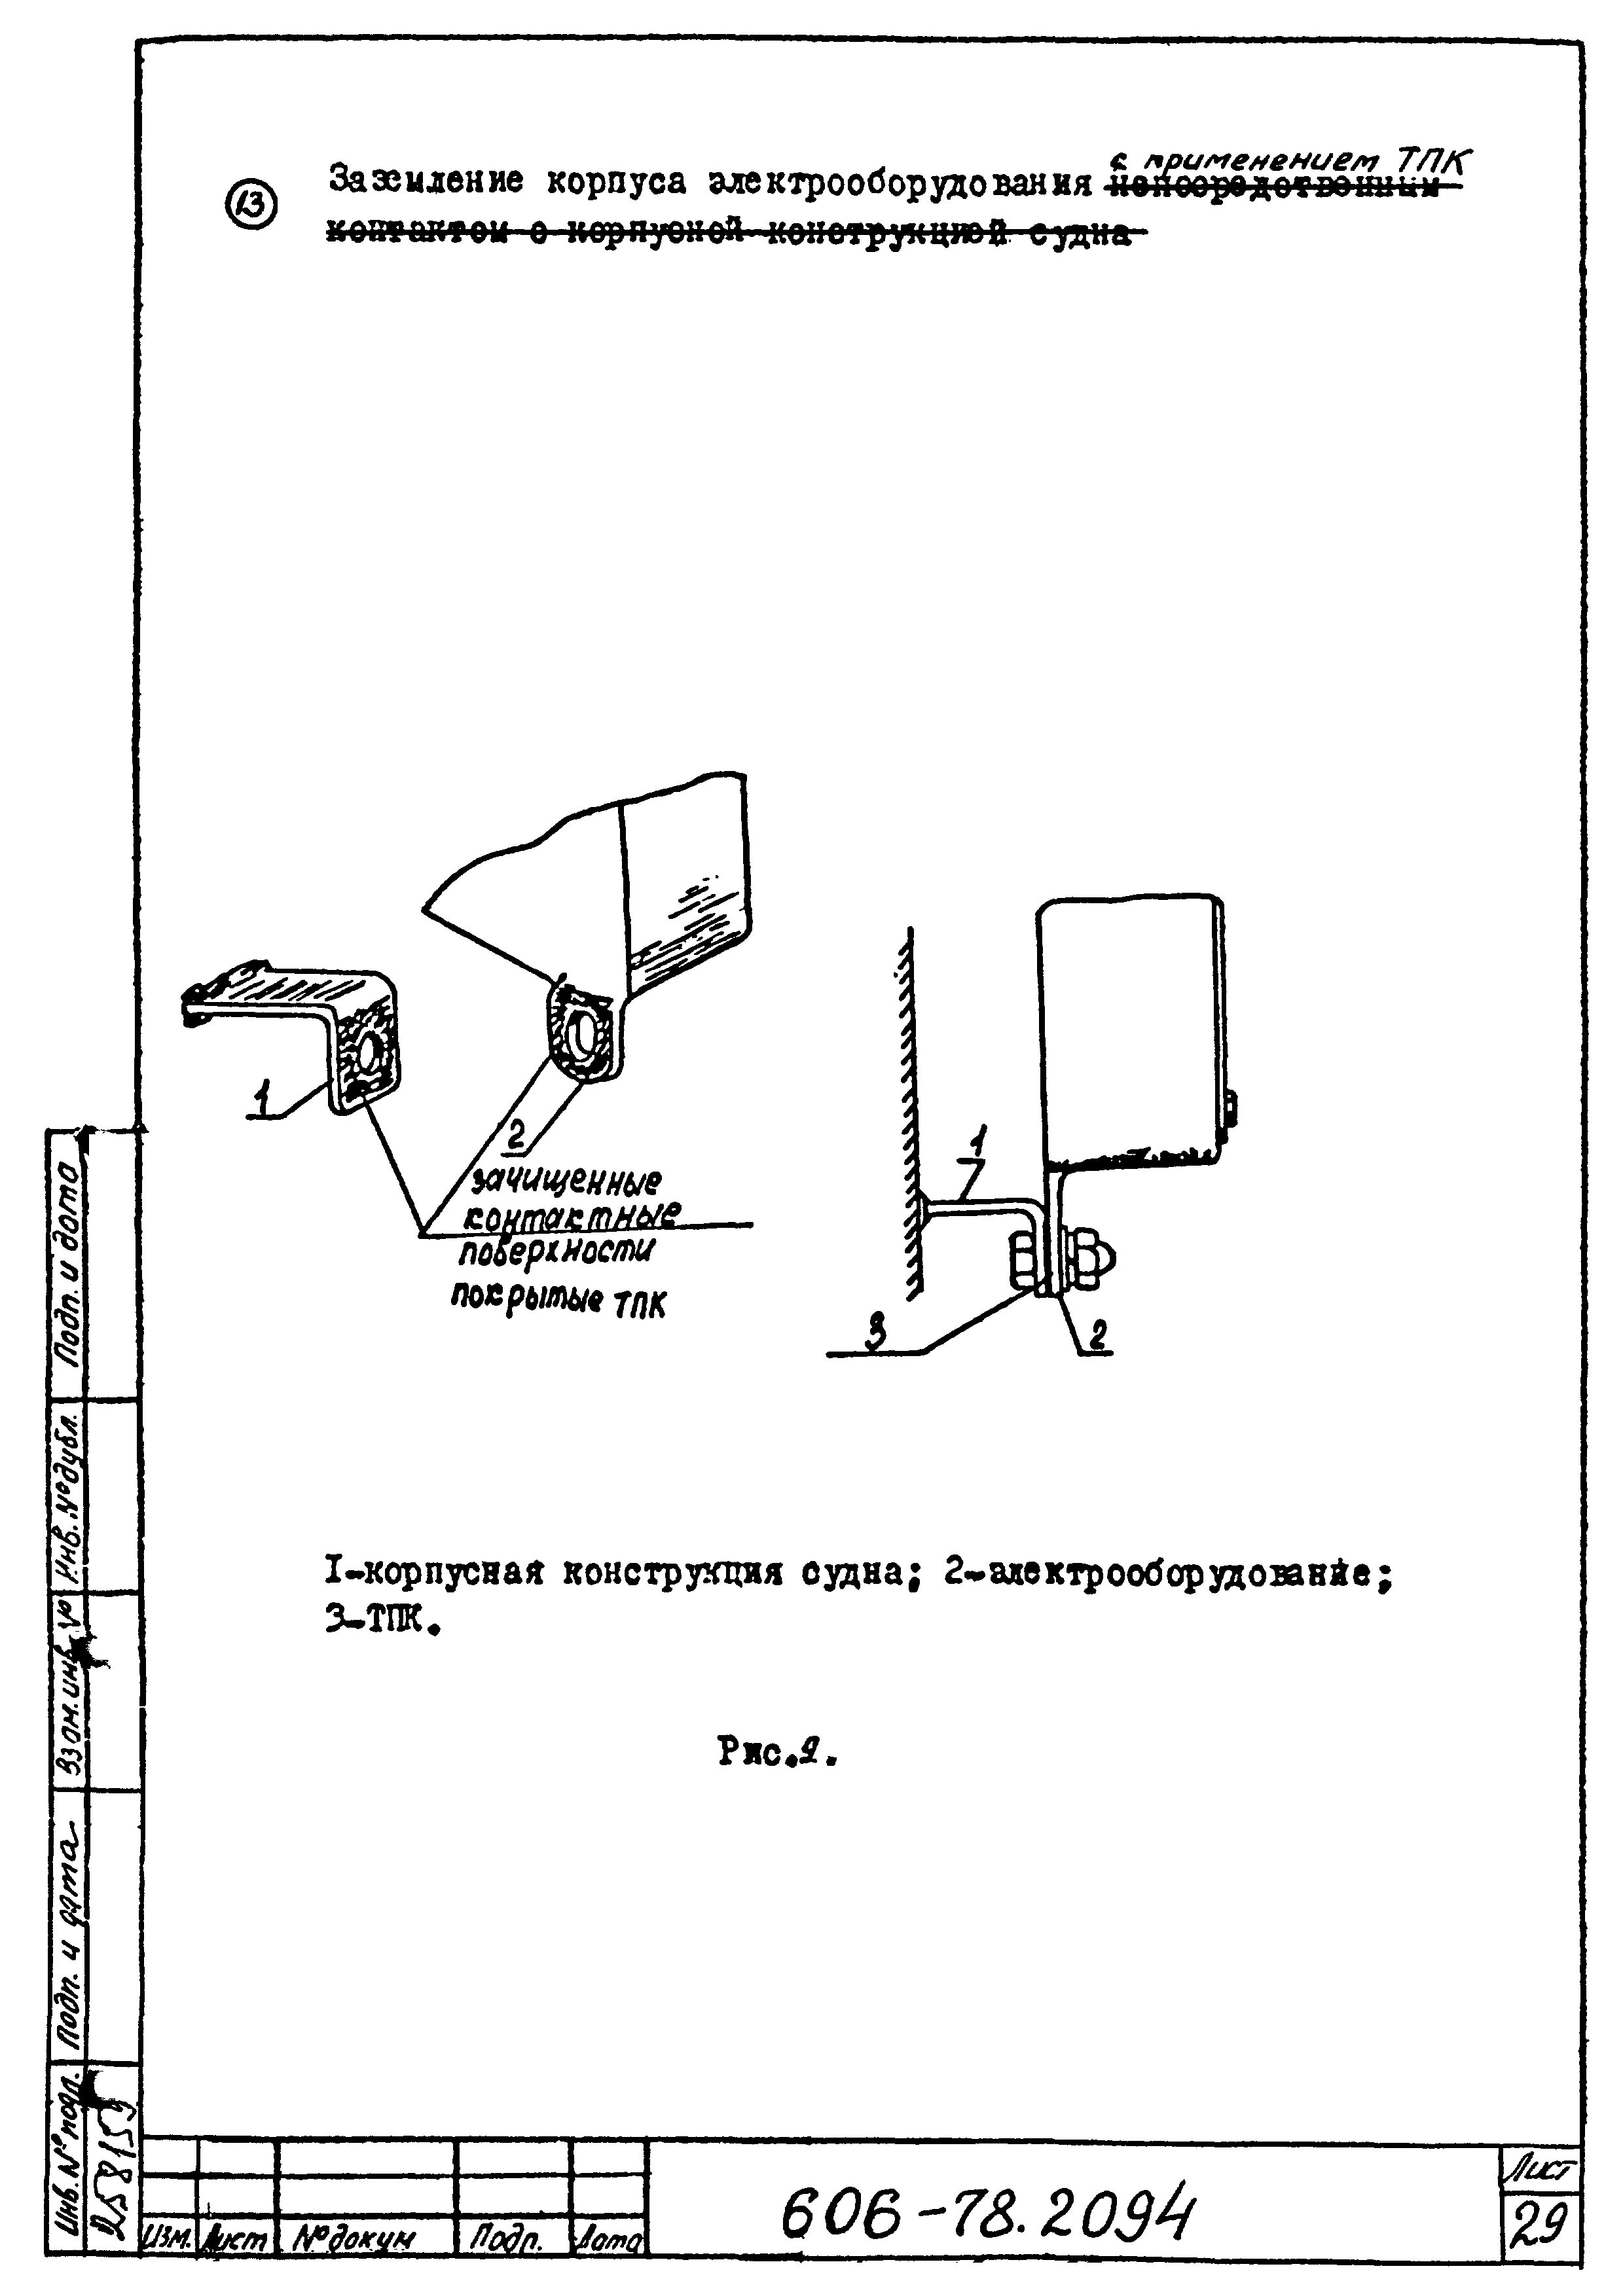 Типовая технологическая инструкция 606-78.2094